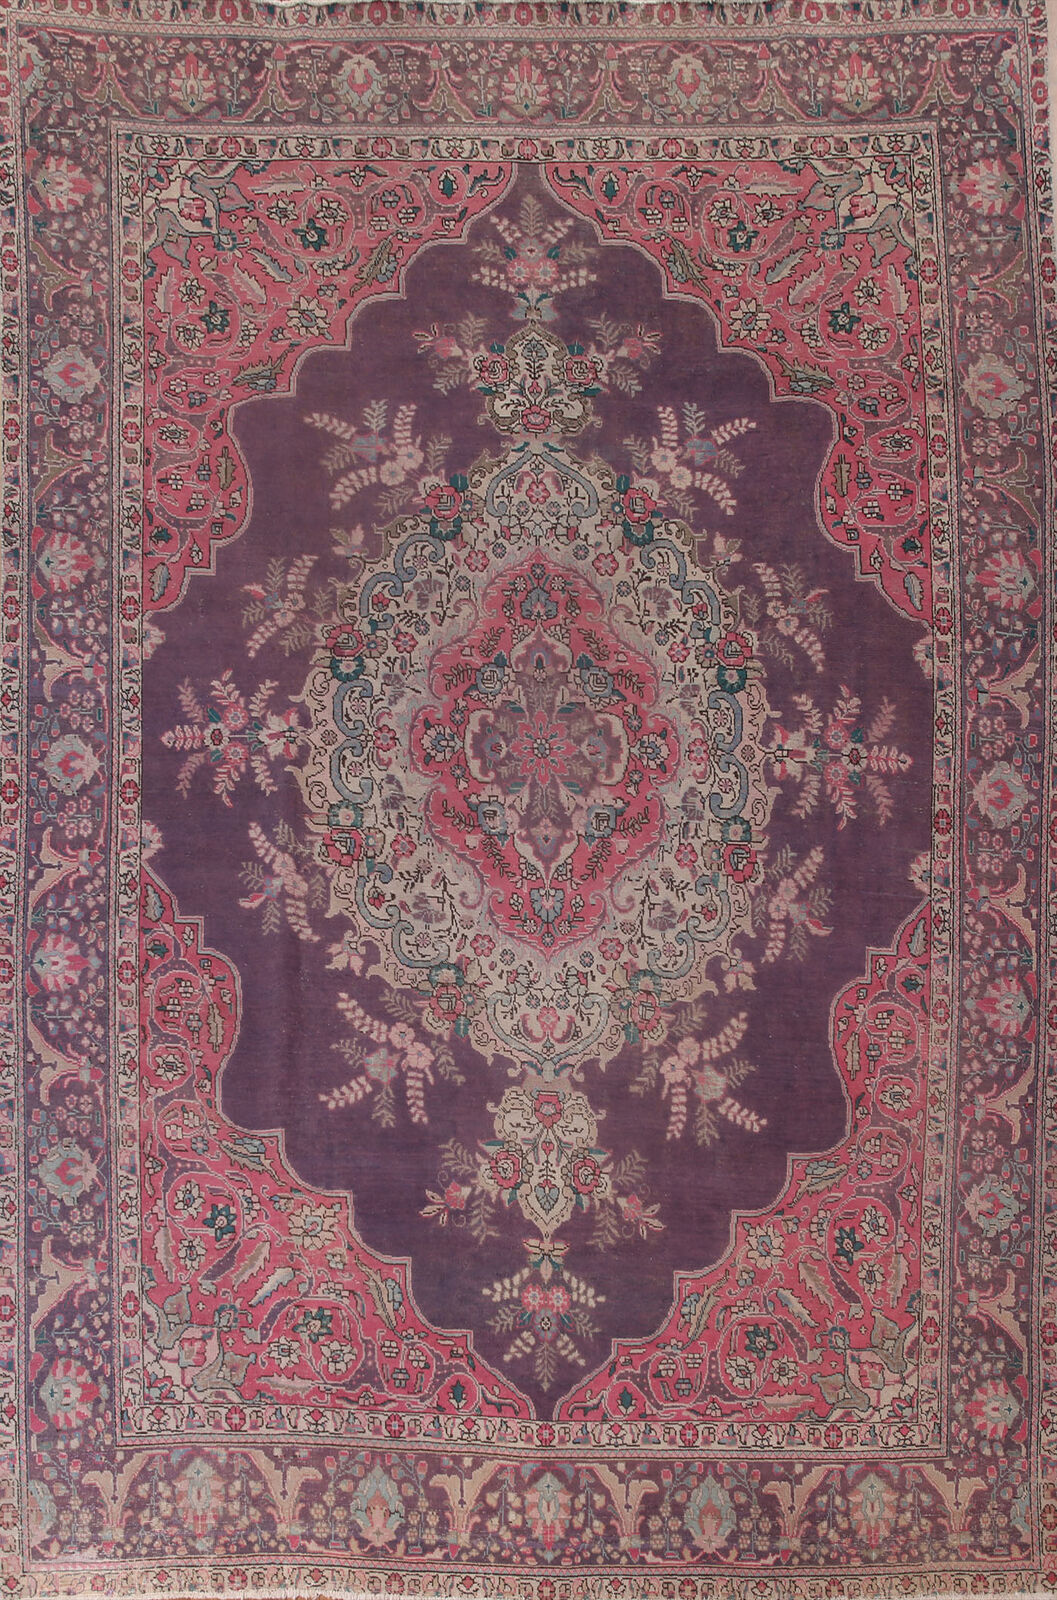 Vintage Traditional Purple Wool Tebriz Area Rug 9x12 Handmade Living Room Carpet